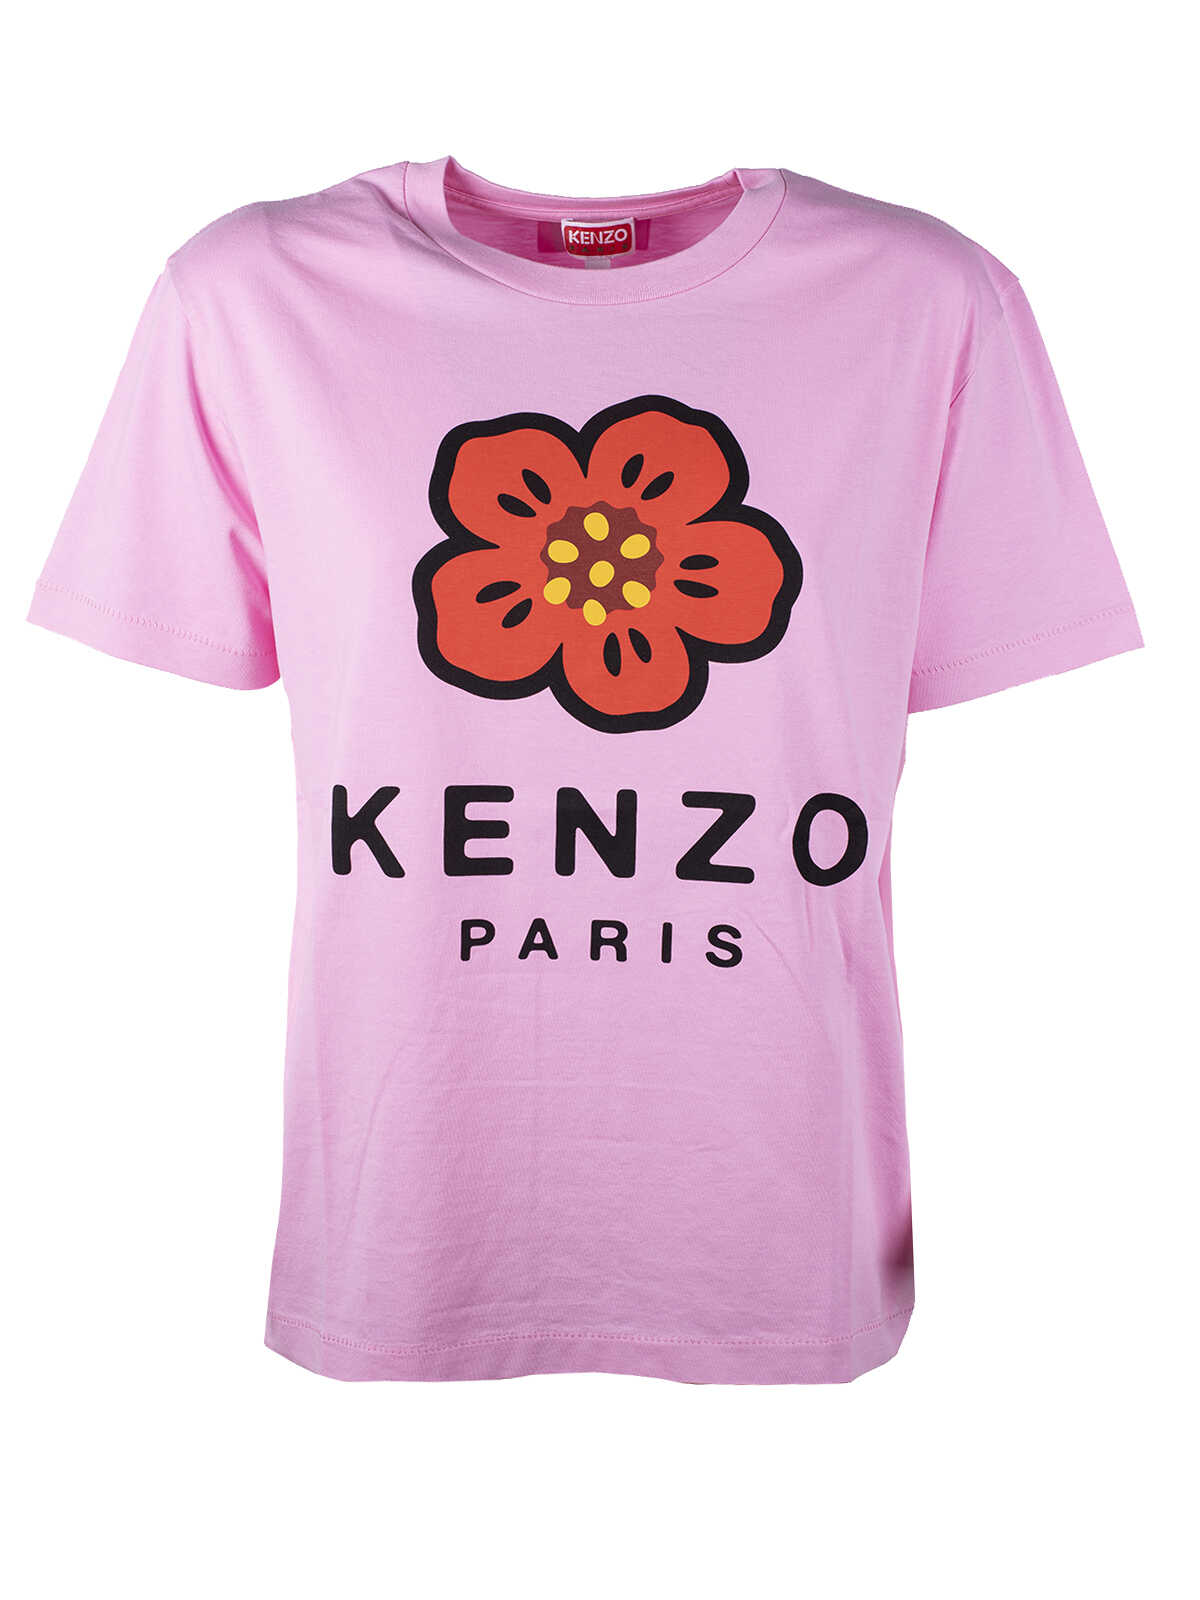 Kenzo Kenzo Paris Loose Tshirt ROSA